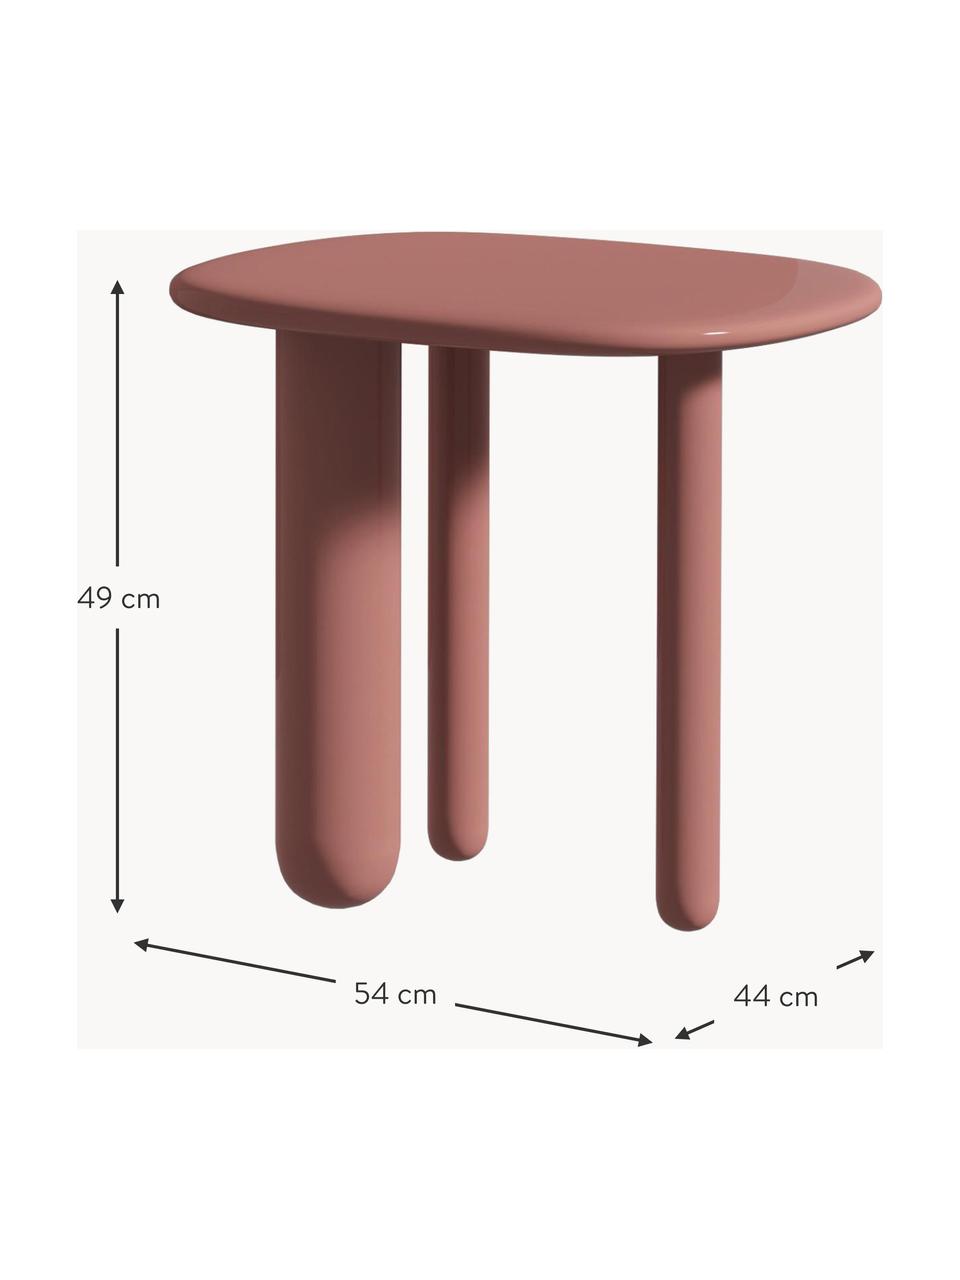 Table d'appoint ovale Tottori, MDF, laqué, Vieux rose, haute brillance, larg. 54 x haut. 49 cm